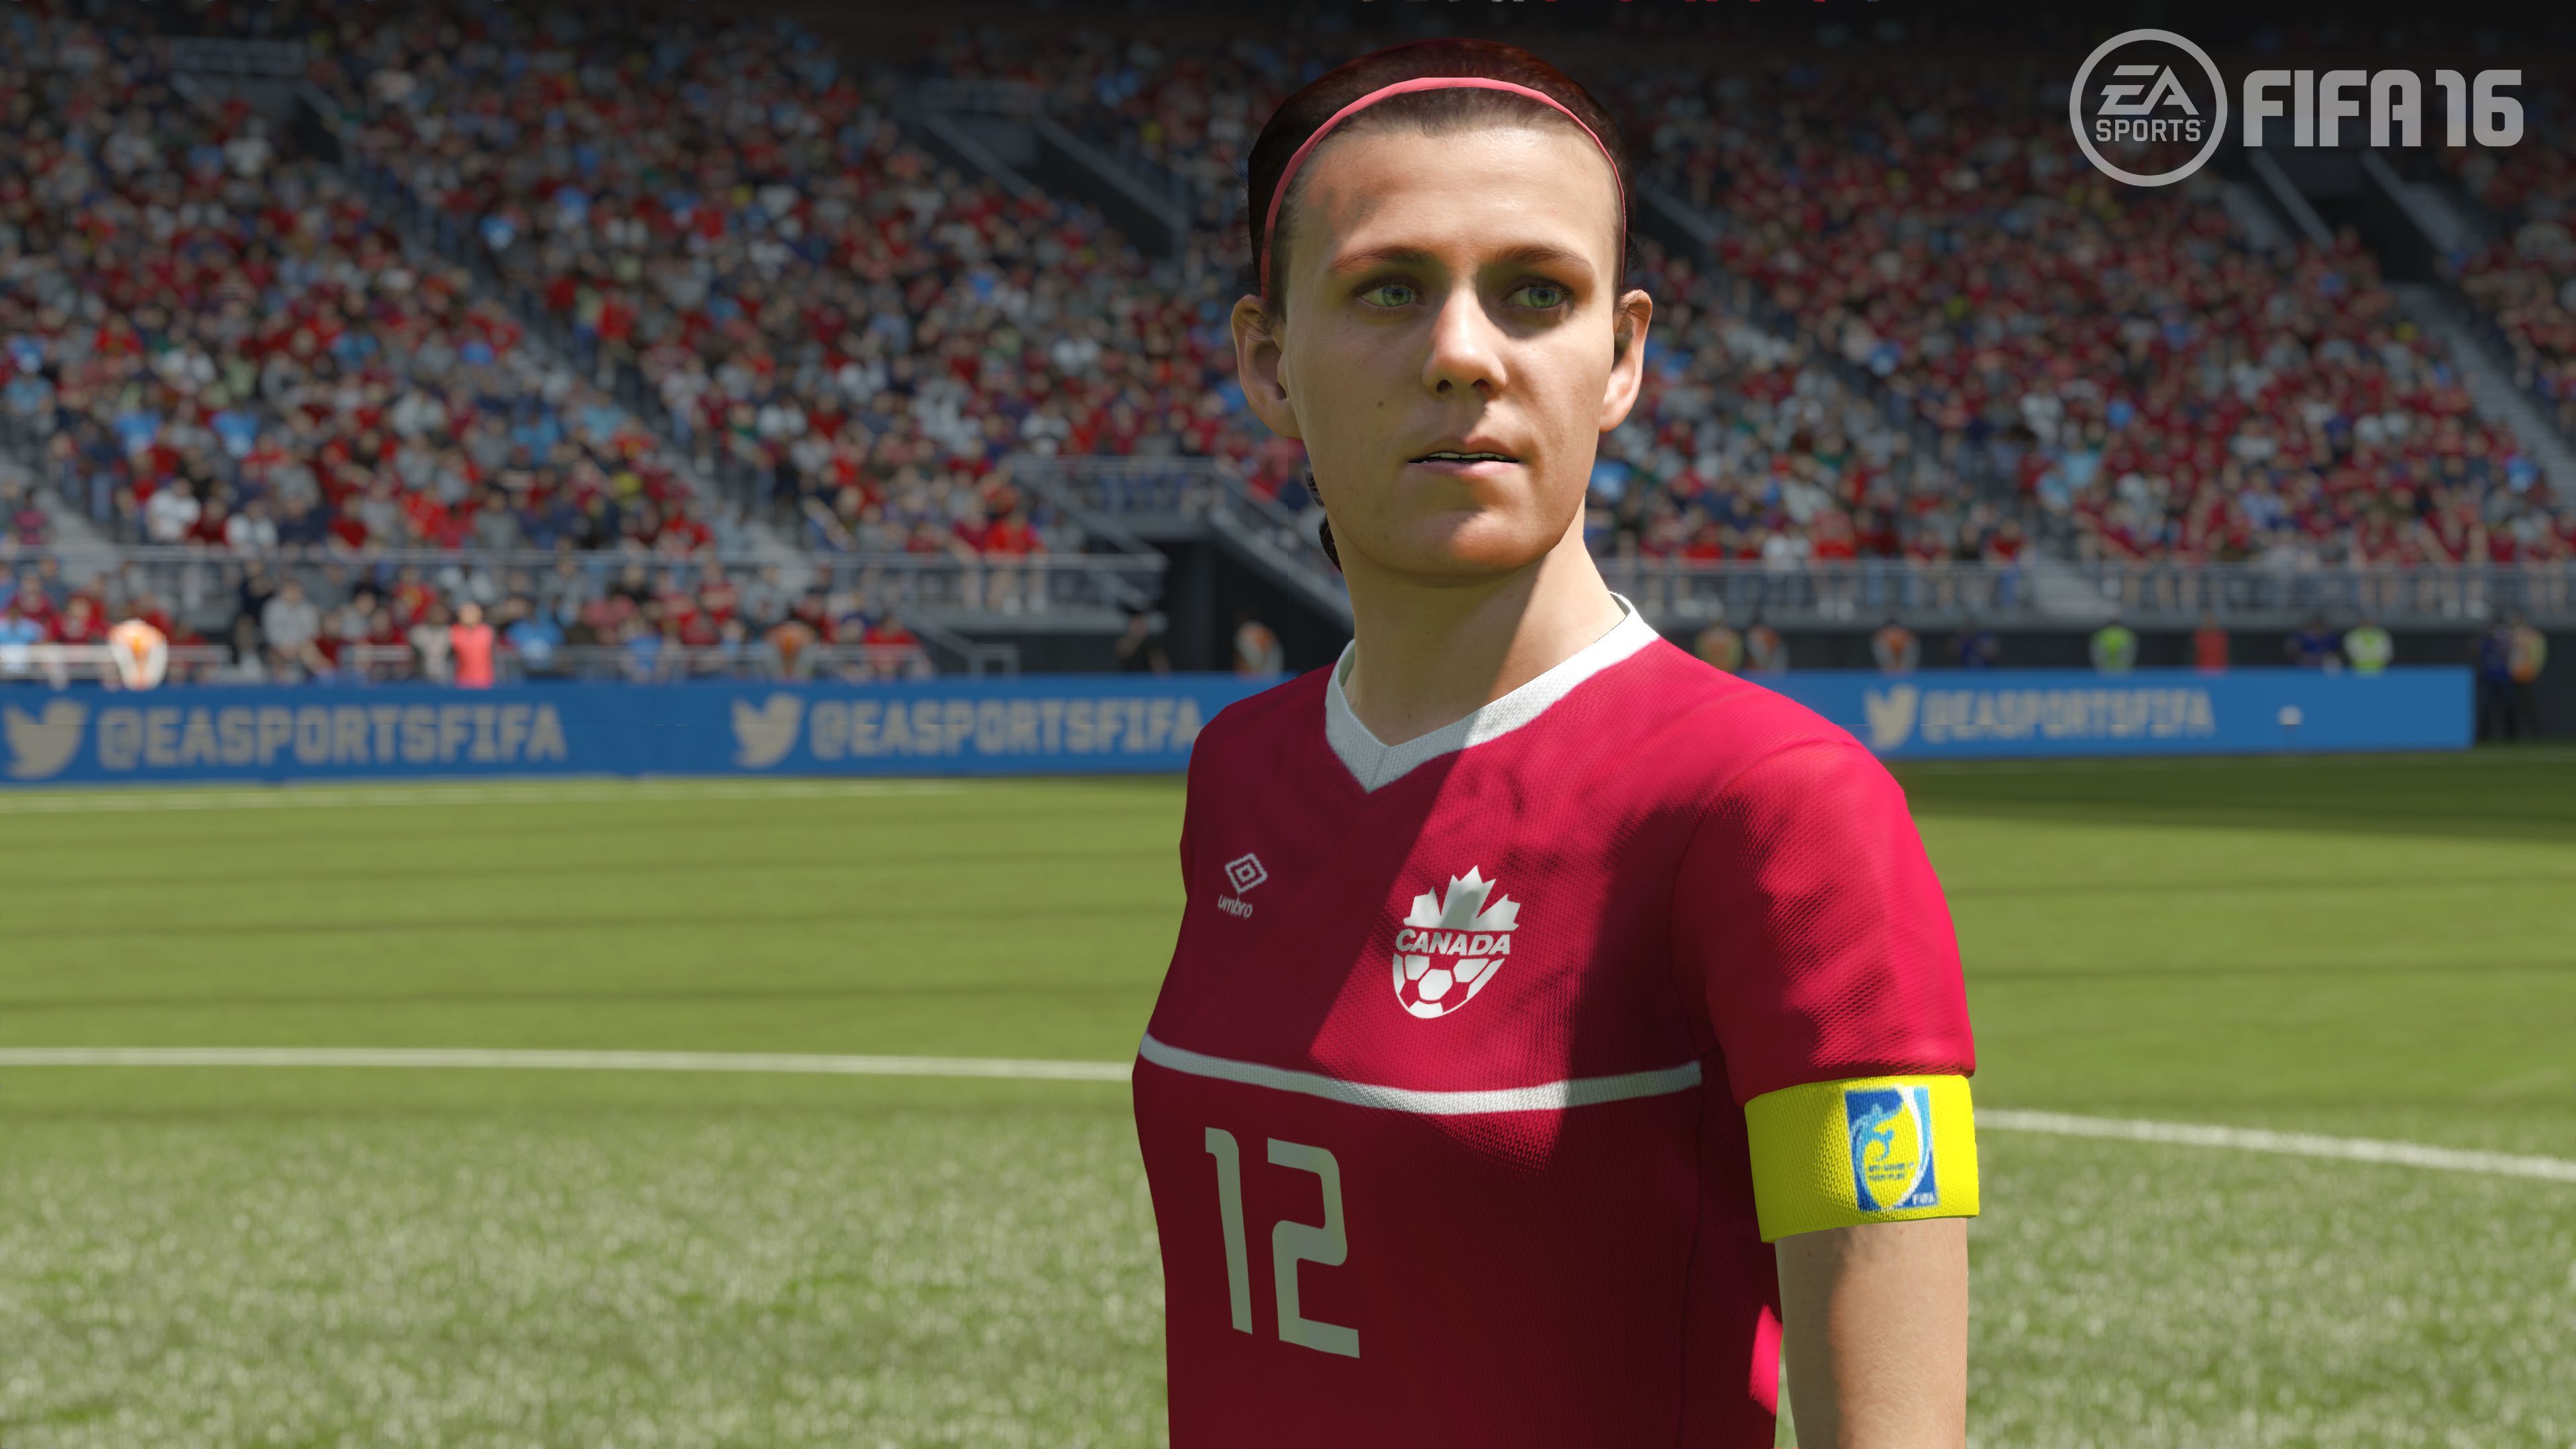 FIFA 16, requisitos mínimos y recomendados de la versión de PC